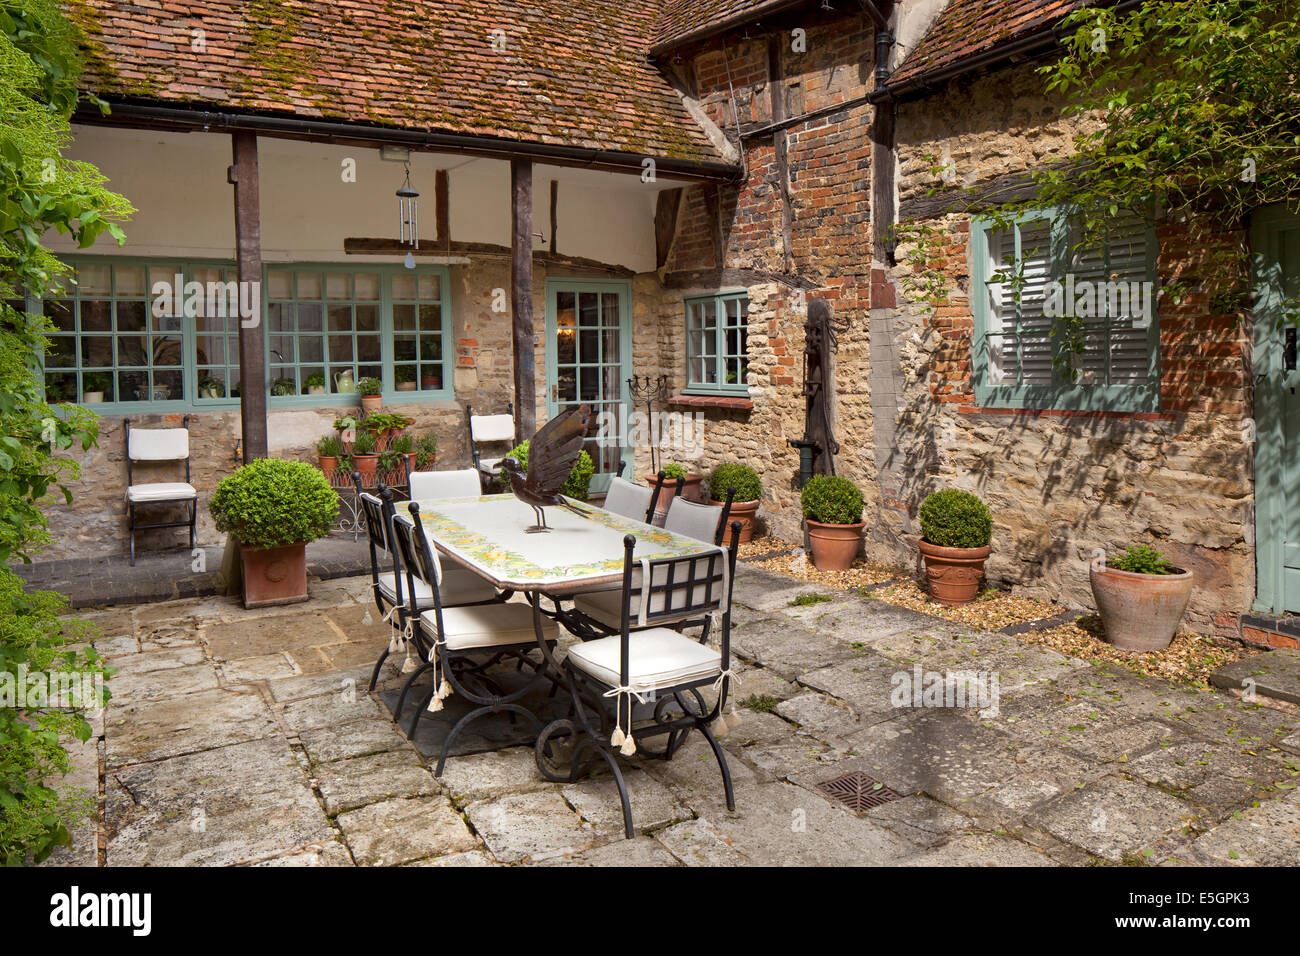 El jardín exterior terraza zona para comer en el patio de la casa,Inglaterra Foto de stock